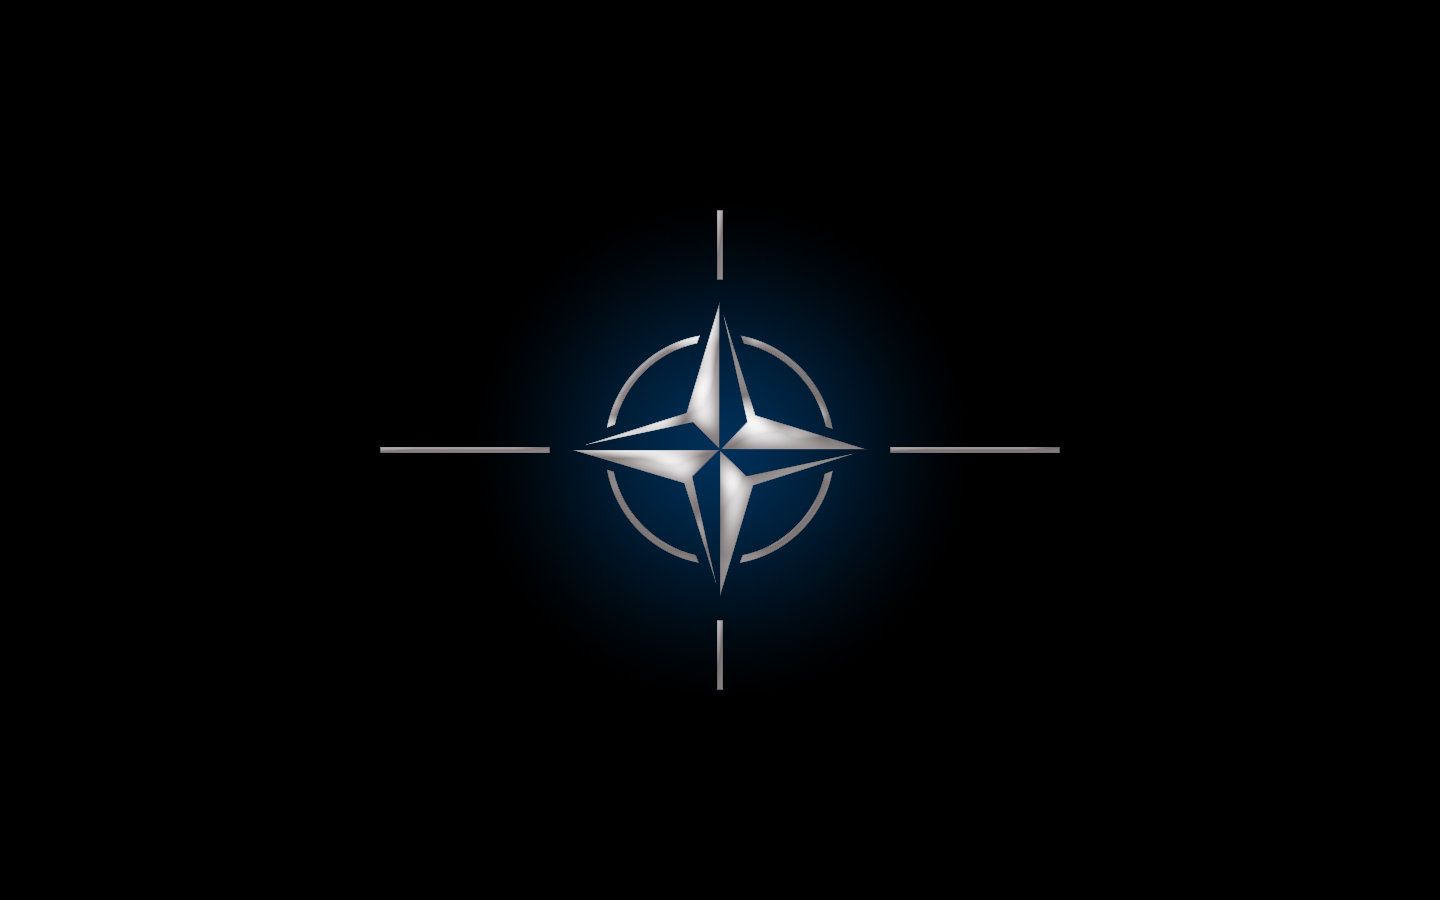 Pensatori strategici che hanno messo in guardia per l'espansione della NATO